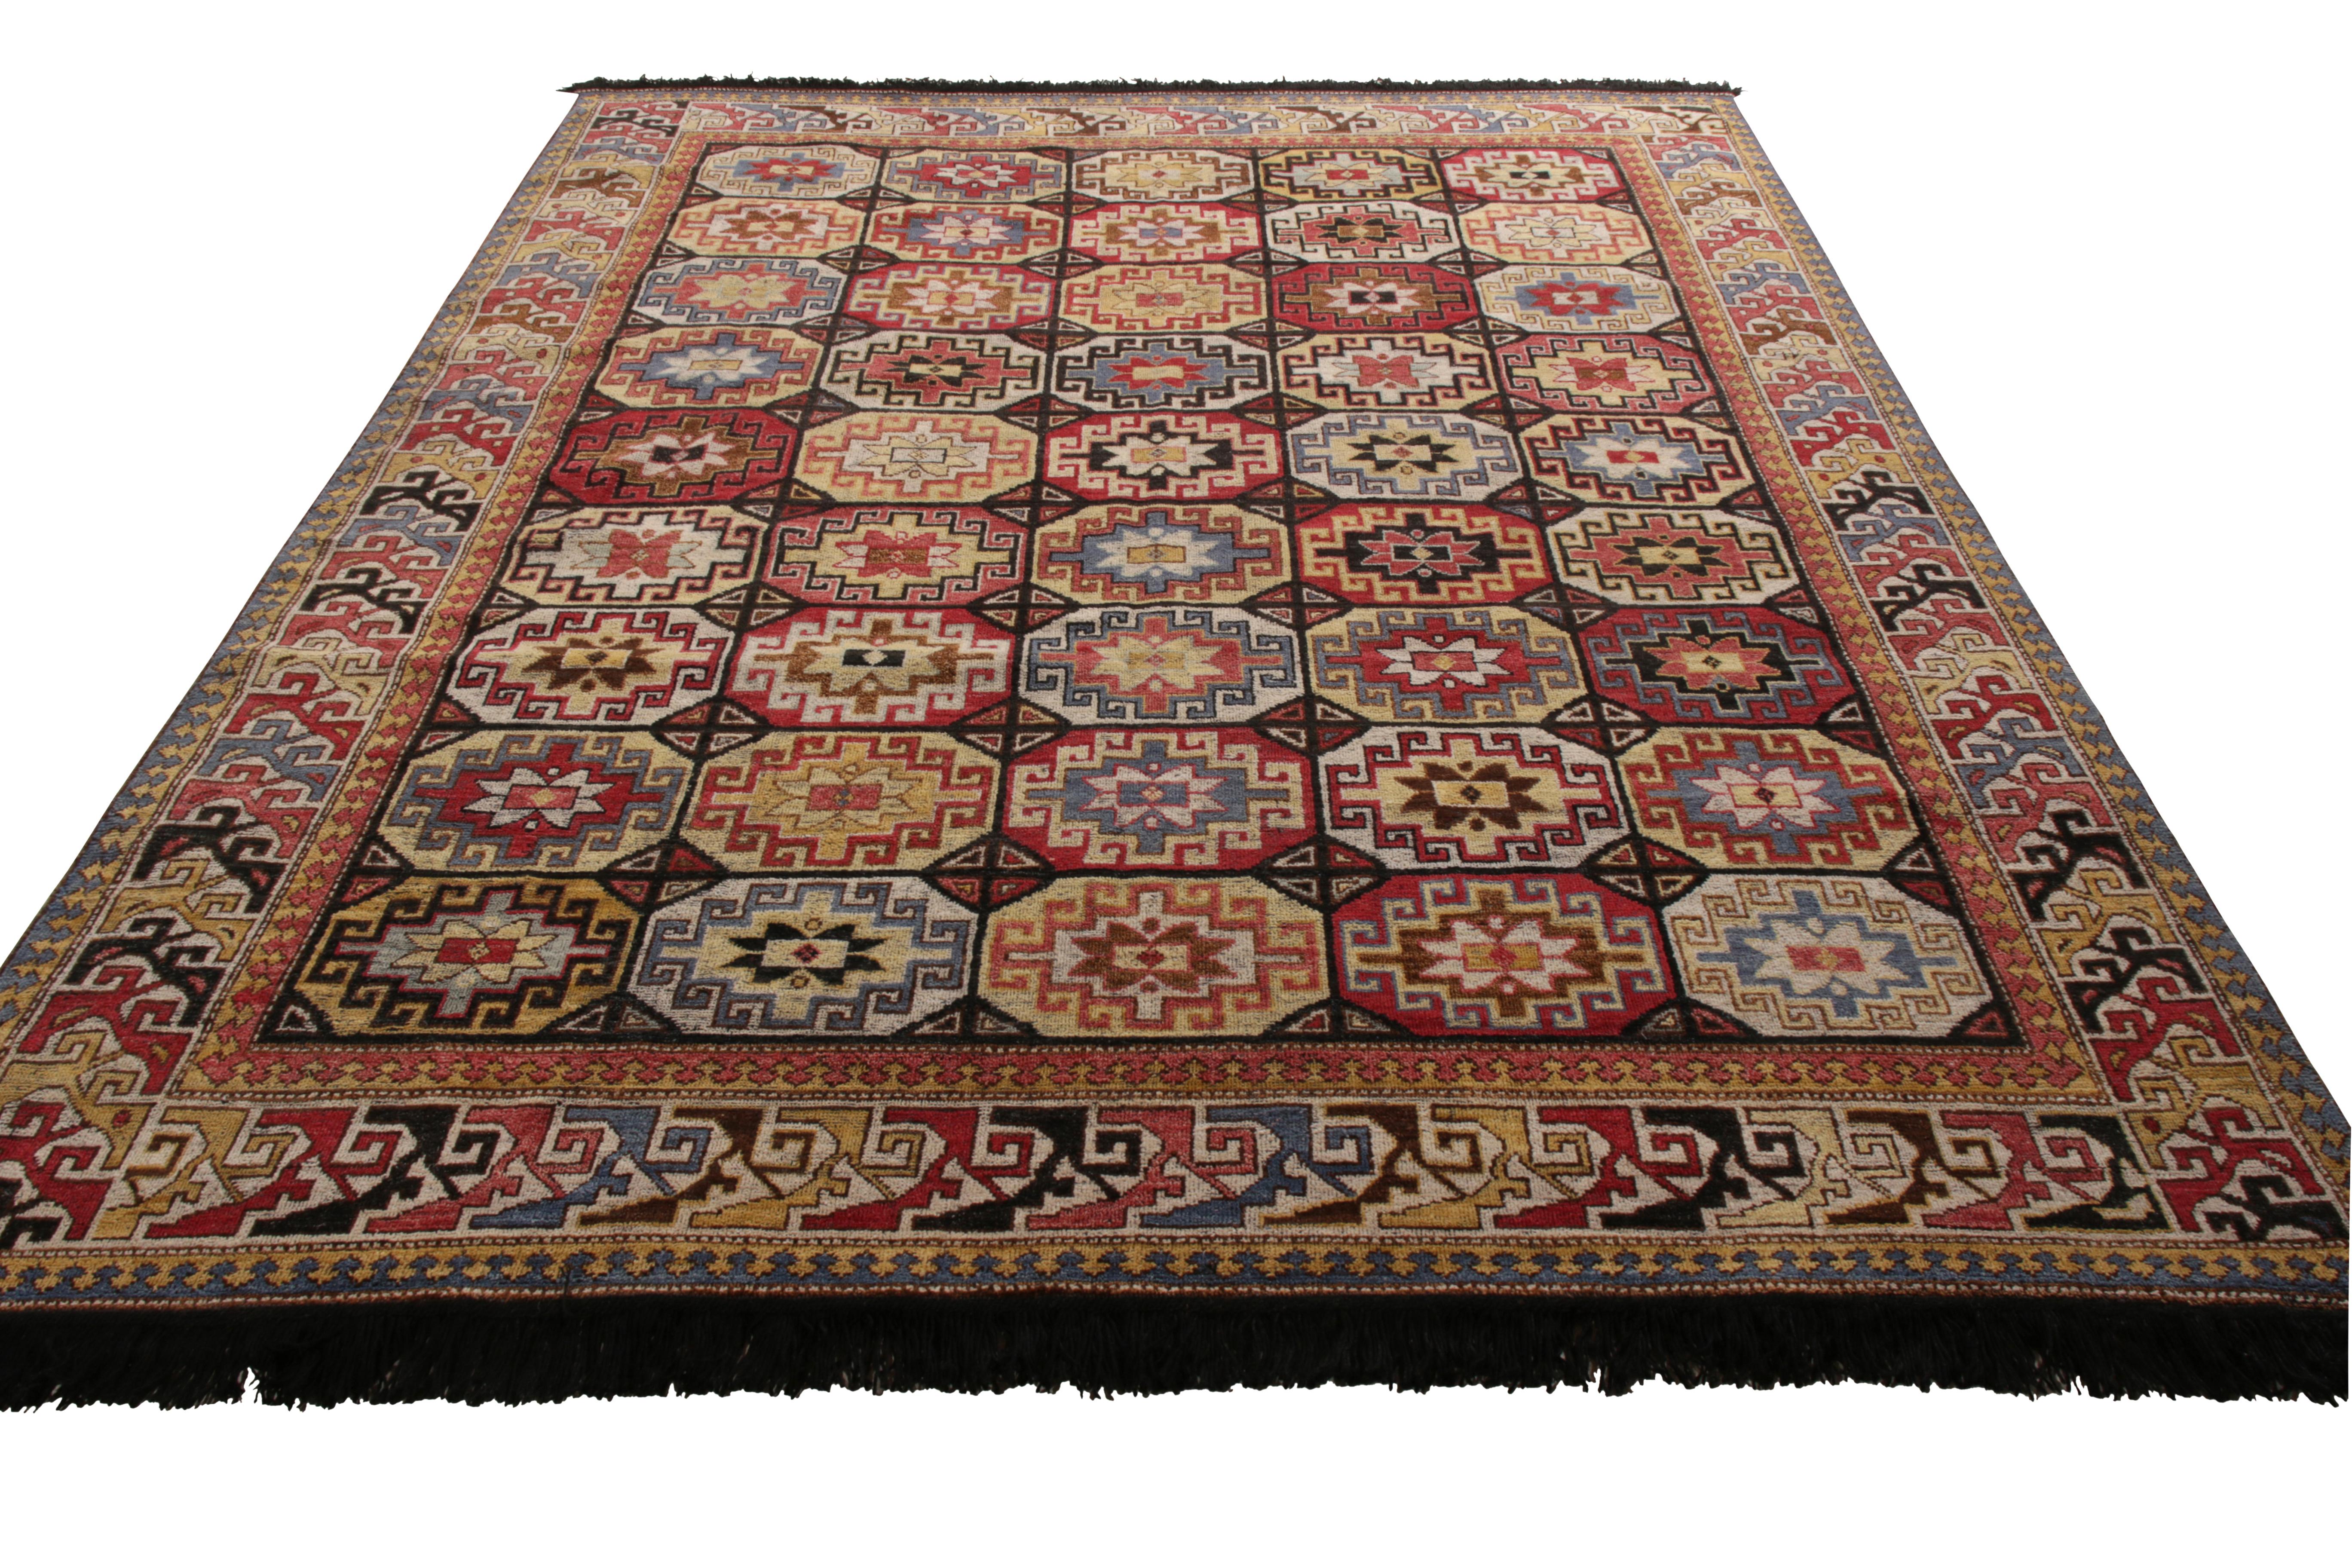 Une ode 8 x 10 aux célèbres styles de tapis tribaux, de la collection Burano de Rug & Kilim. Noué à la main dans une laine douce de Ghazni, le rouge et l'or se retrouvent dans une palette variée de motifs géométriques. 

Sur le design : Les